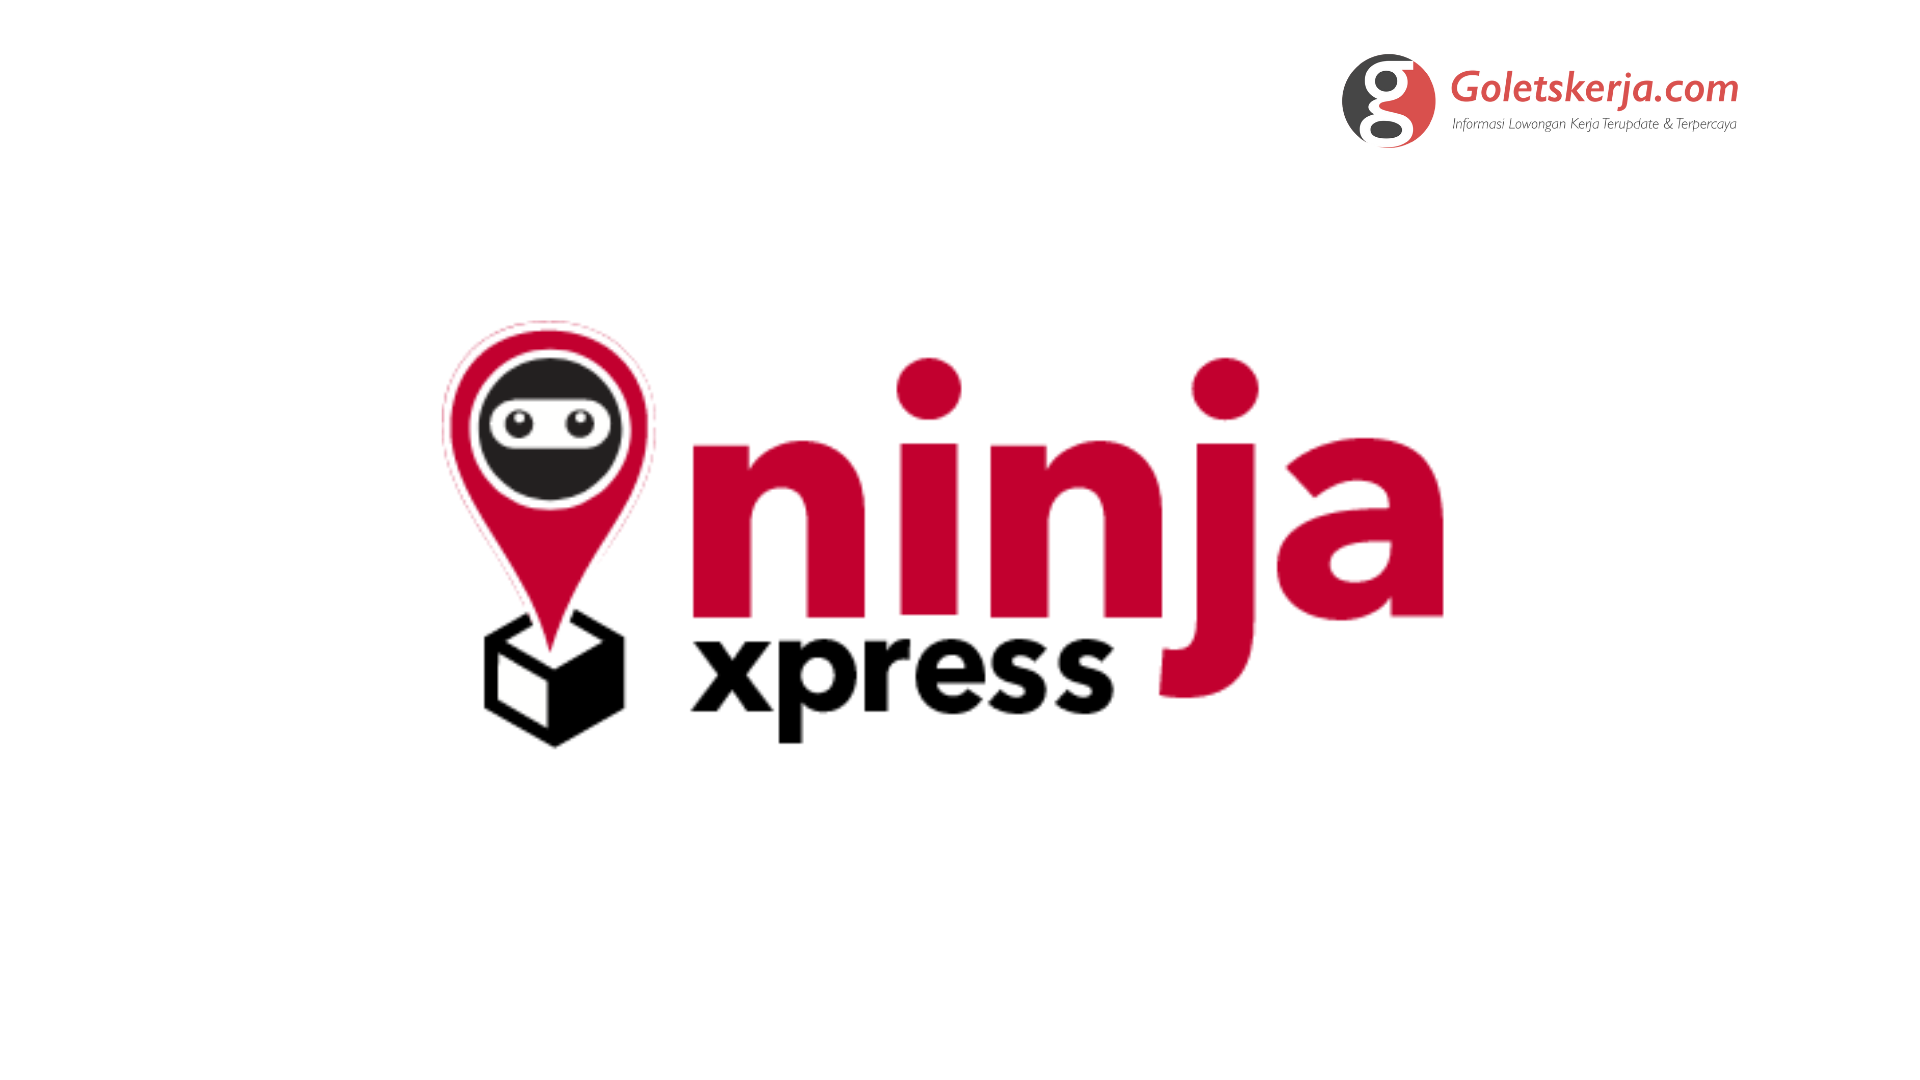 Lowongan Kerja PT Ninja Van Indonesia (Ninja Xpress)